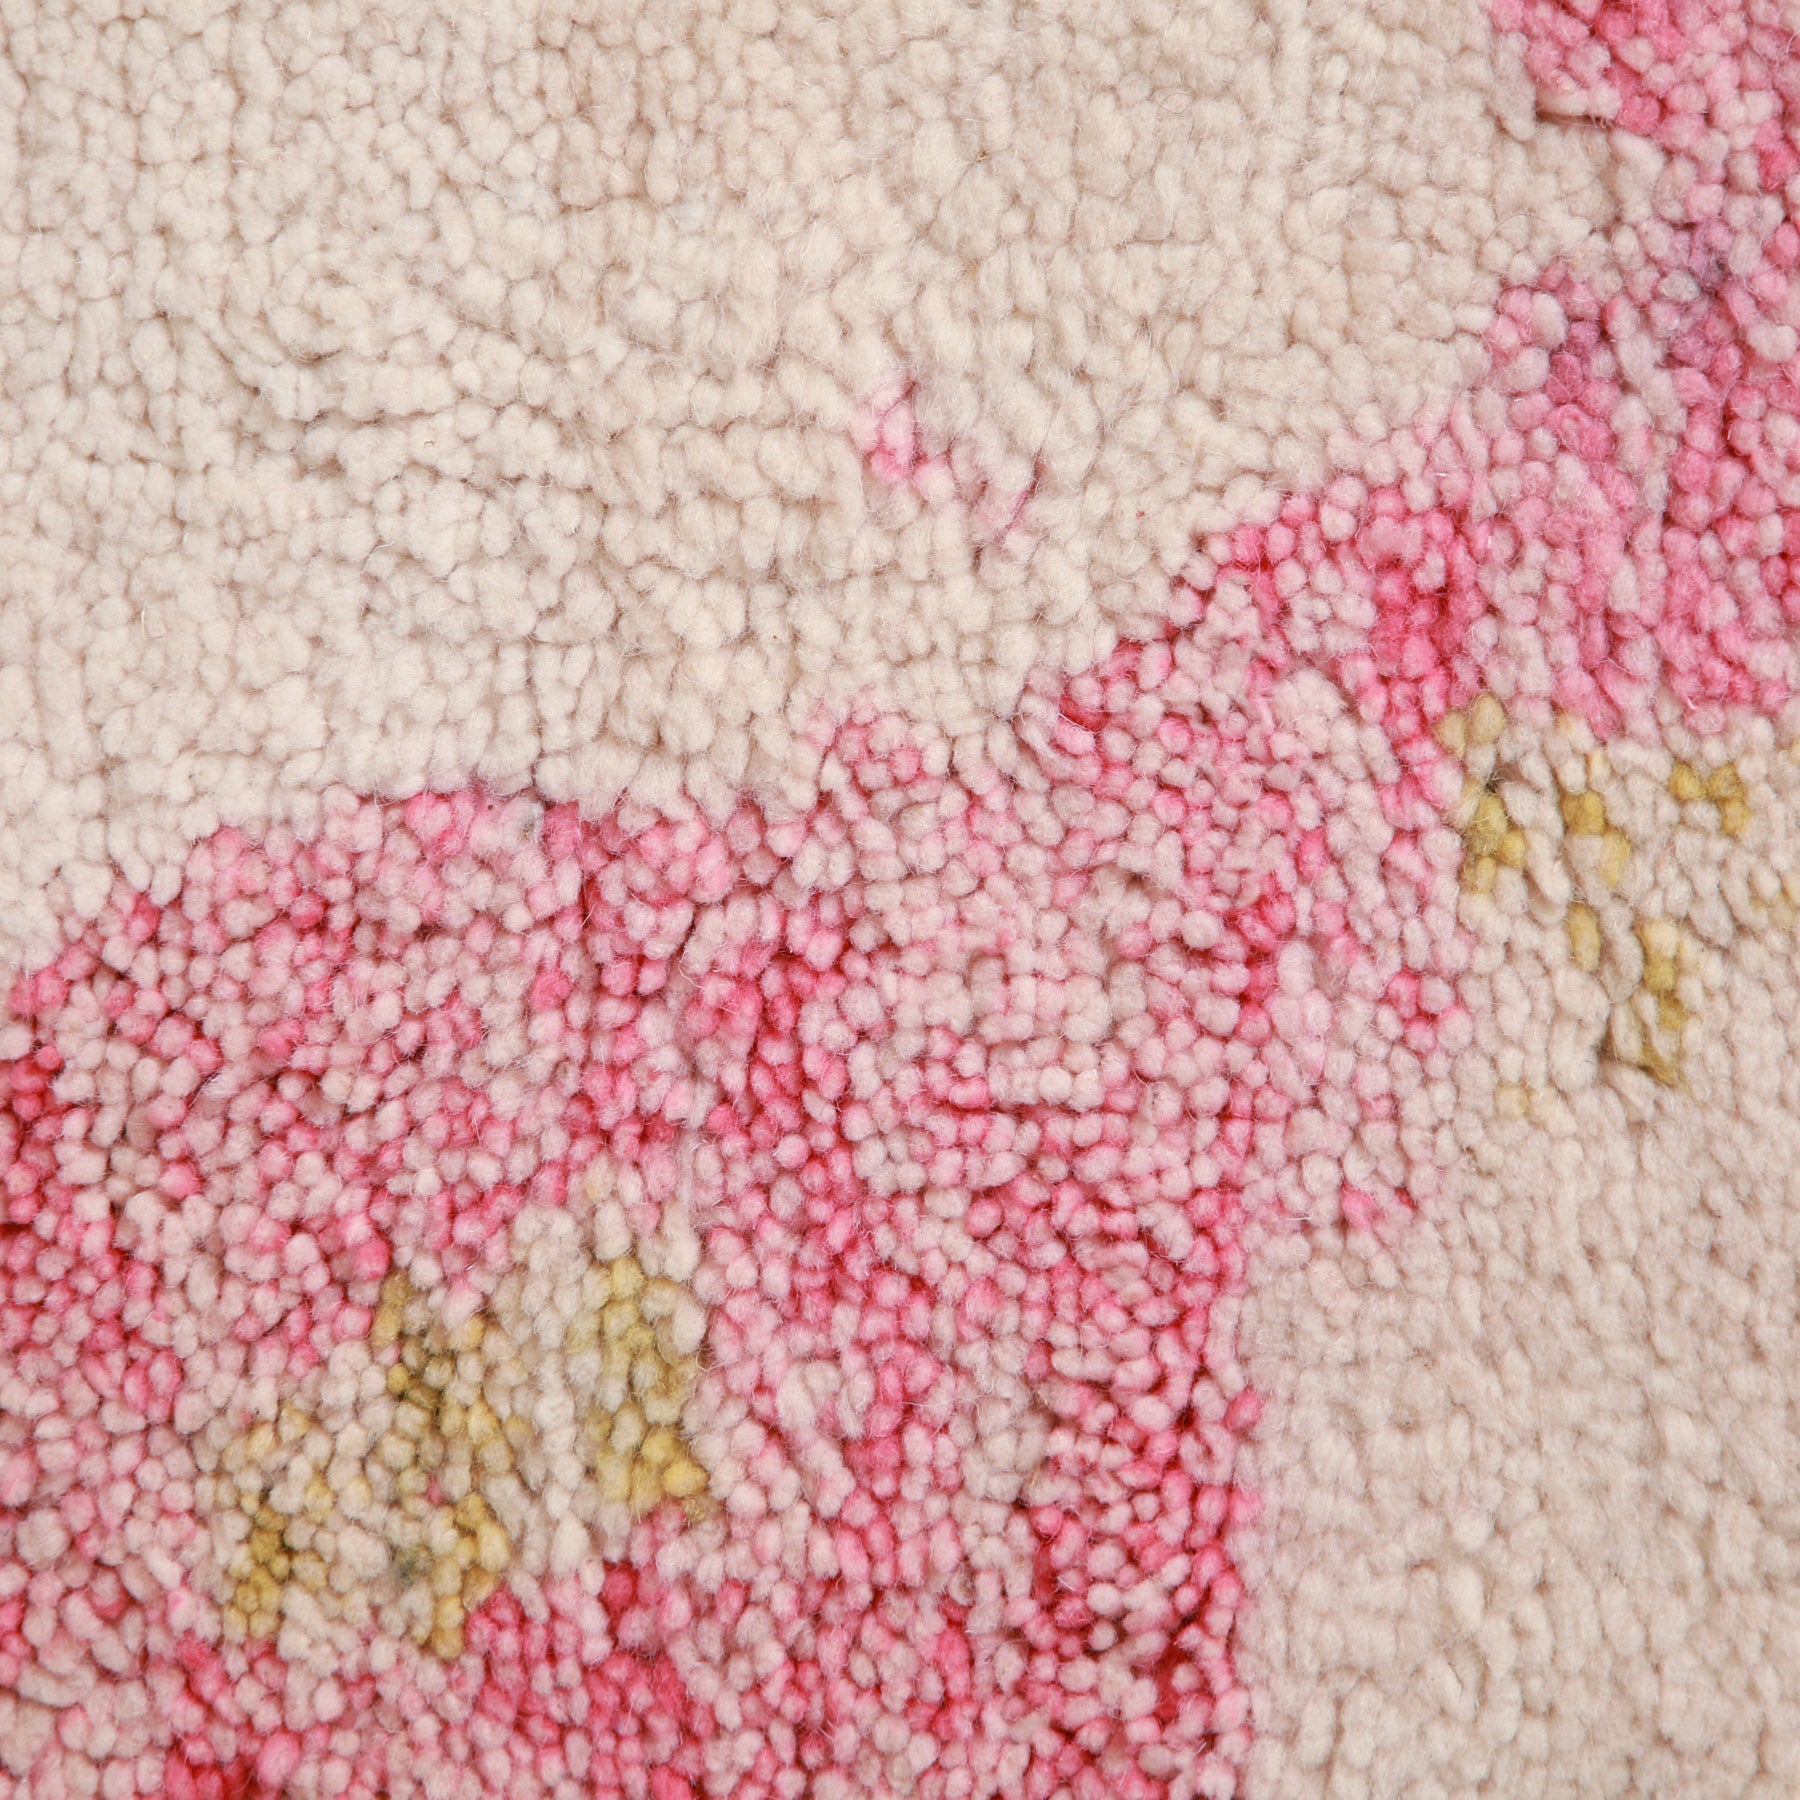 dettaglio ravvicinato del pelo di lana bianca e coor rosa sfumato di un tappeto artigianale marocchino beni ourain